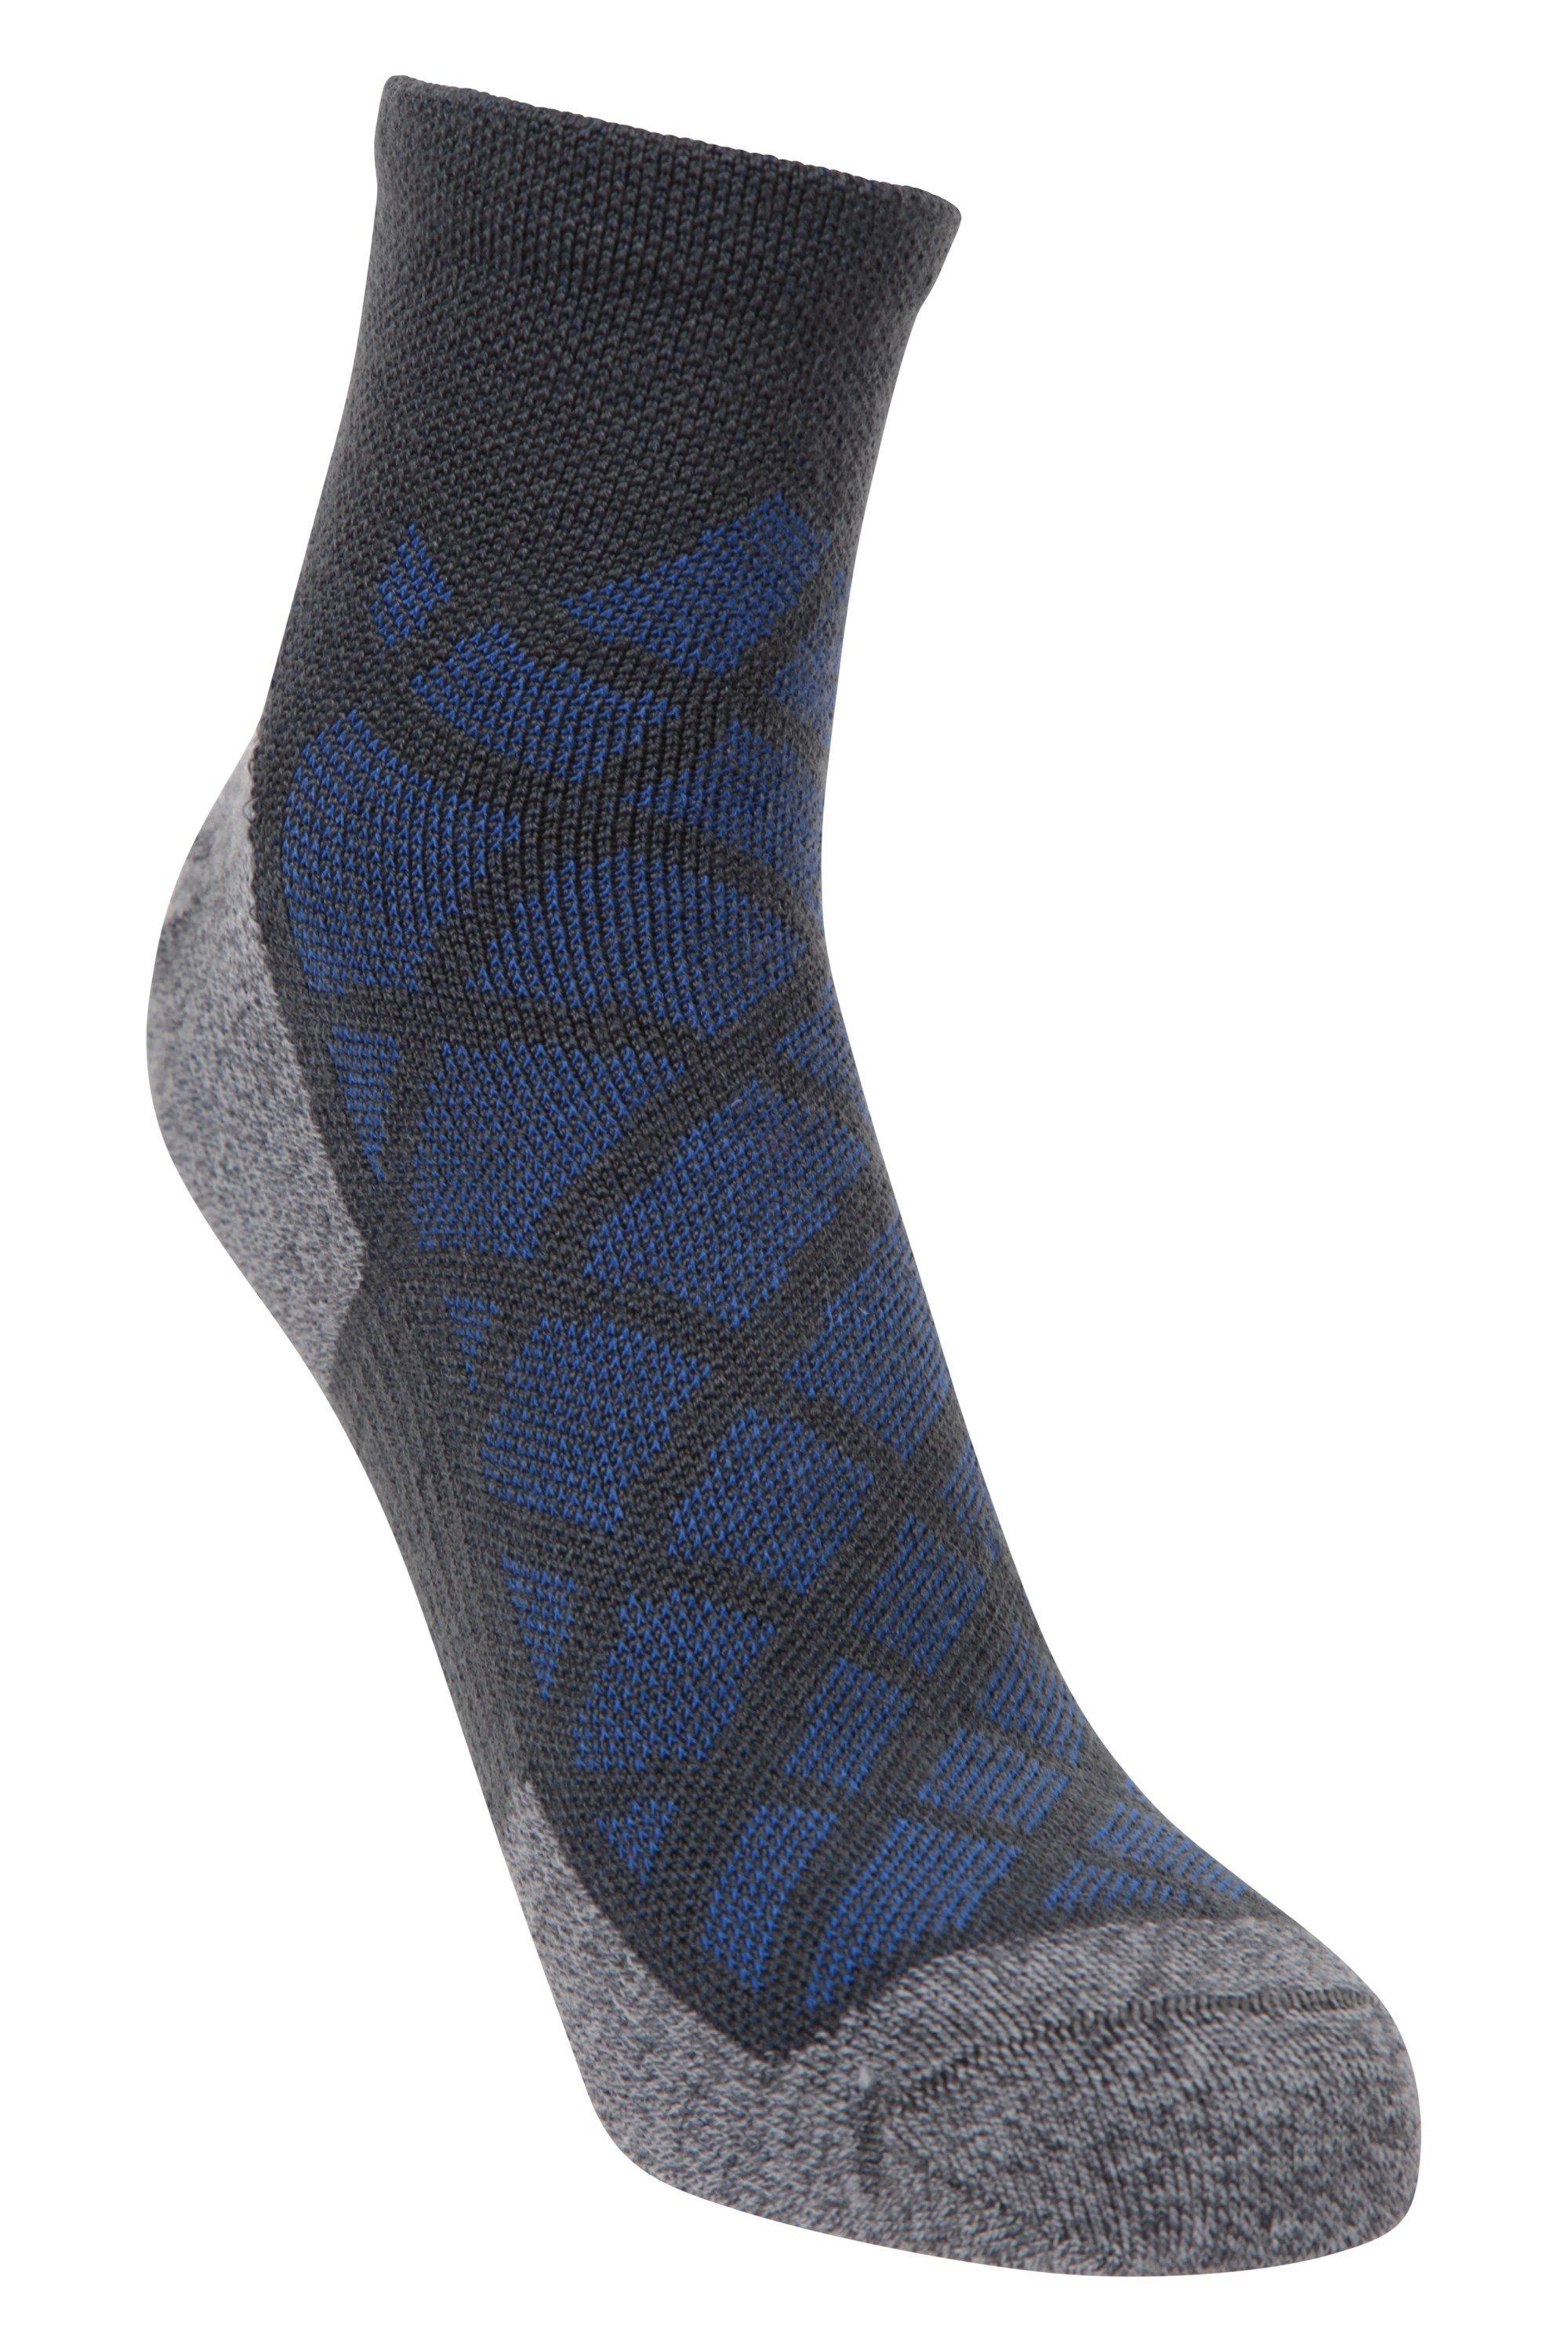 Performance Merino  Ankle Socks Soft Lightweight Socks